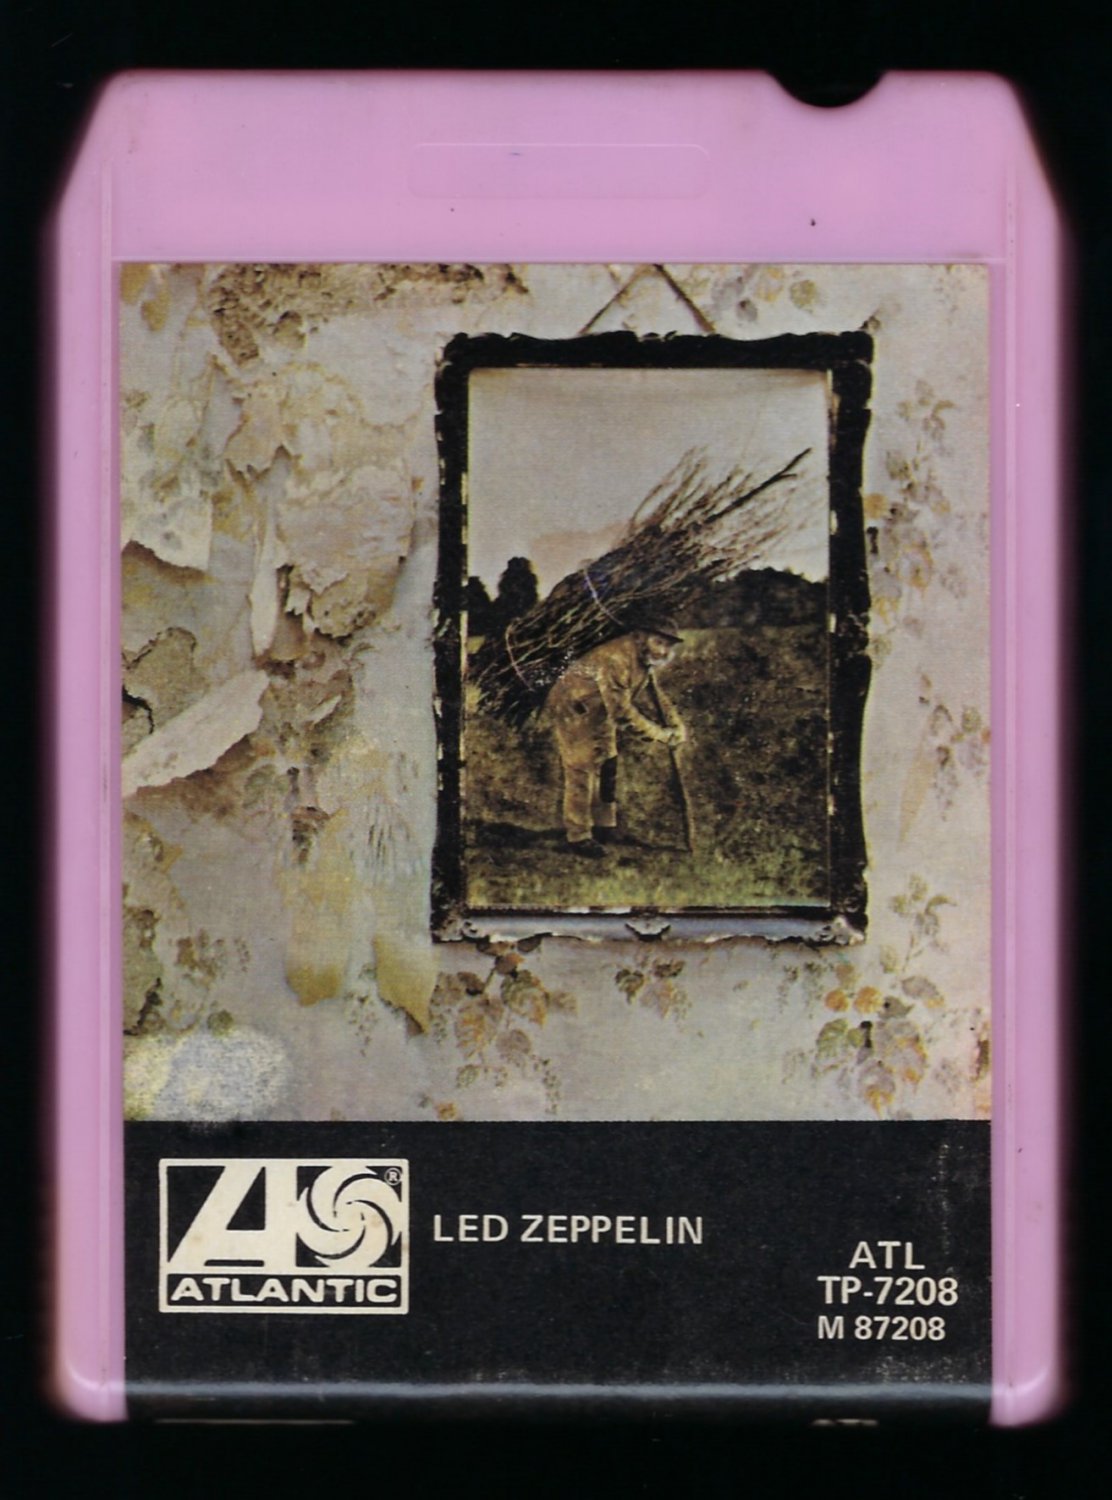 Led Zeppelin - Led Zeppelin IV ZOSO 1974 AMPEX ATLANTIC T11 8-TRACK TAPE